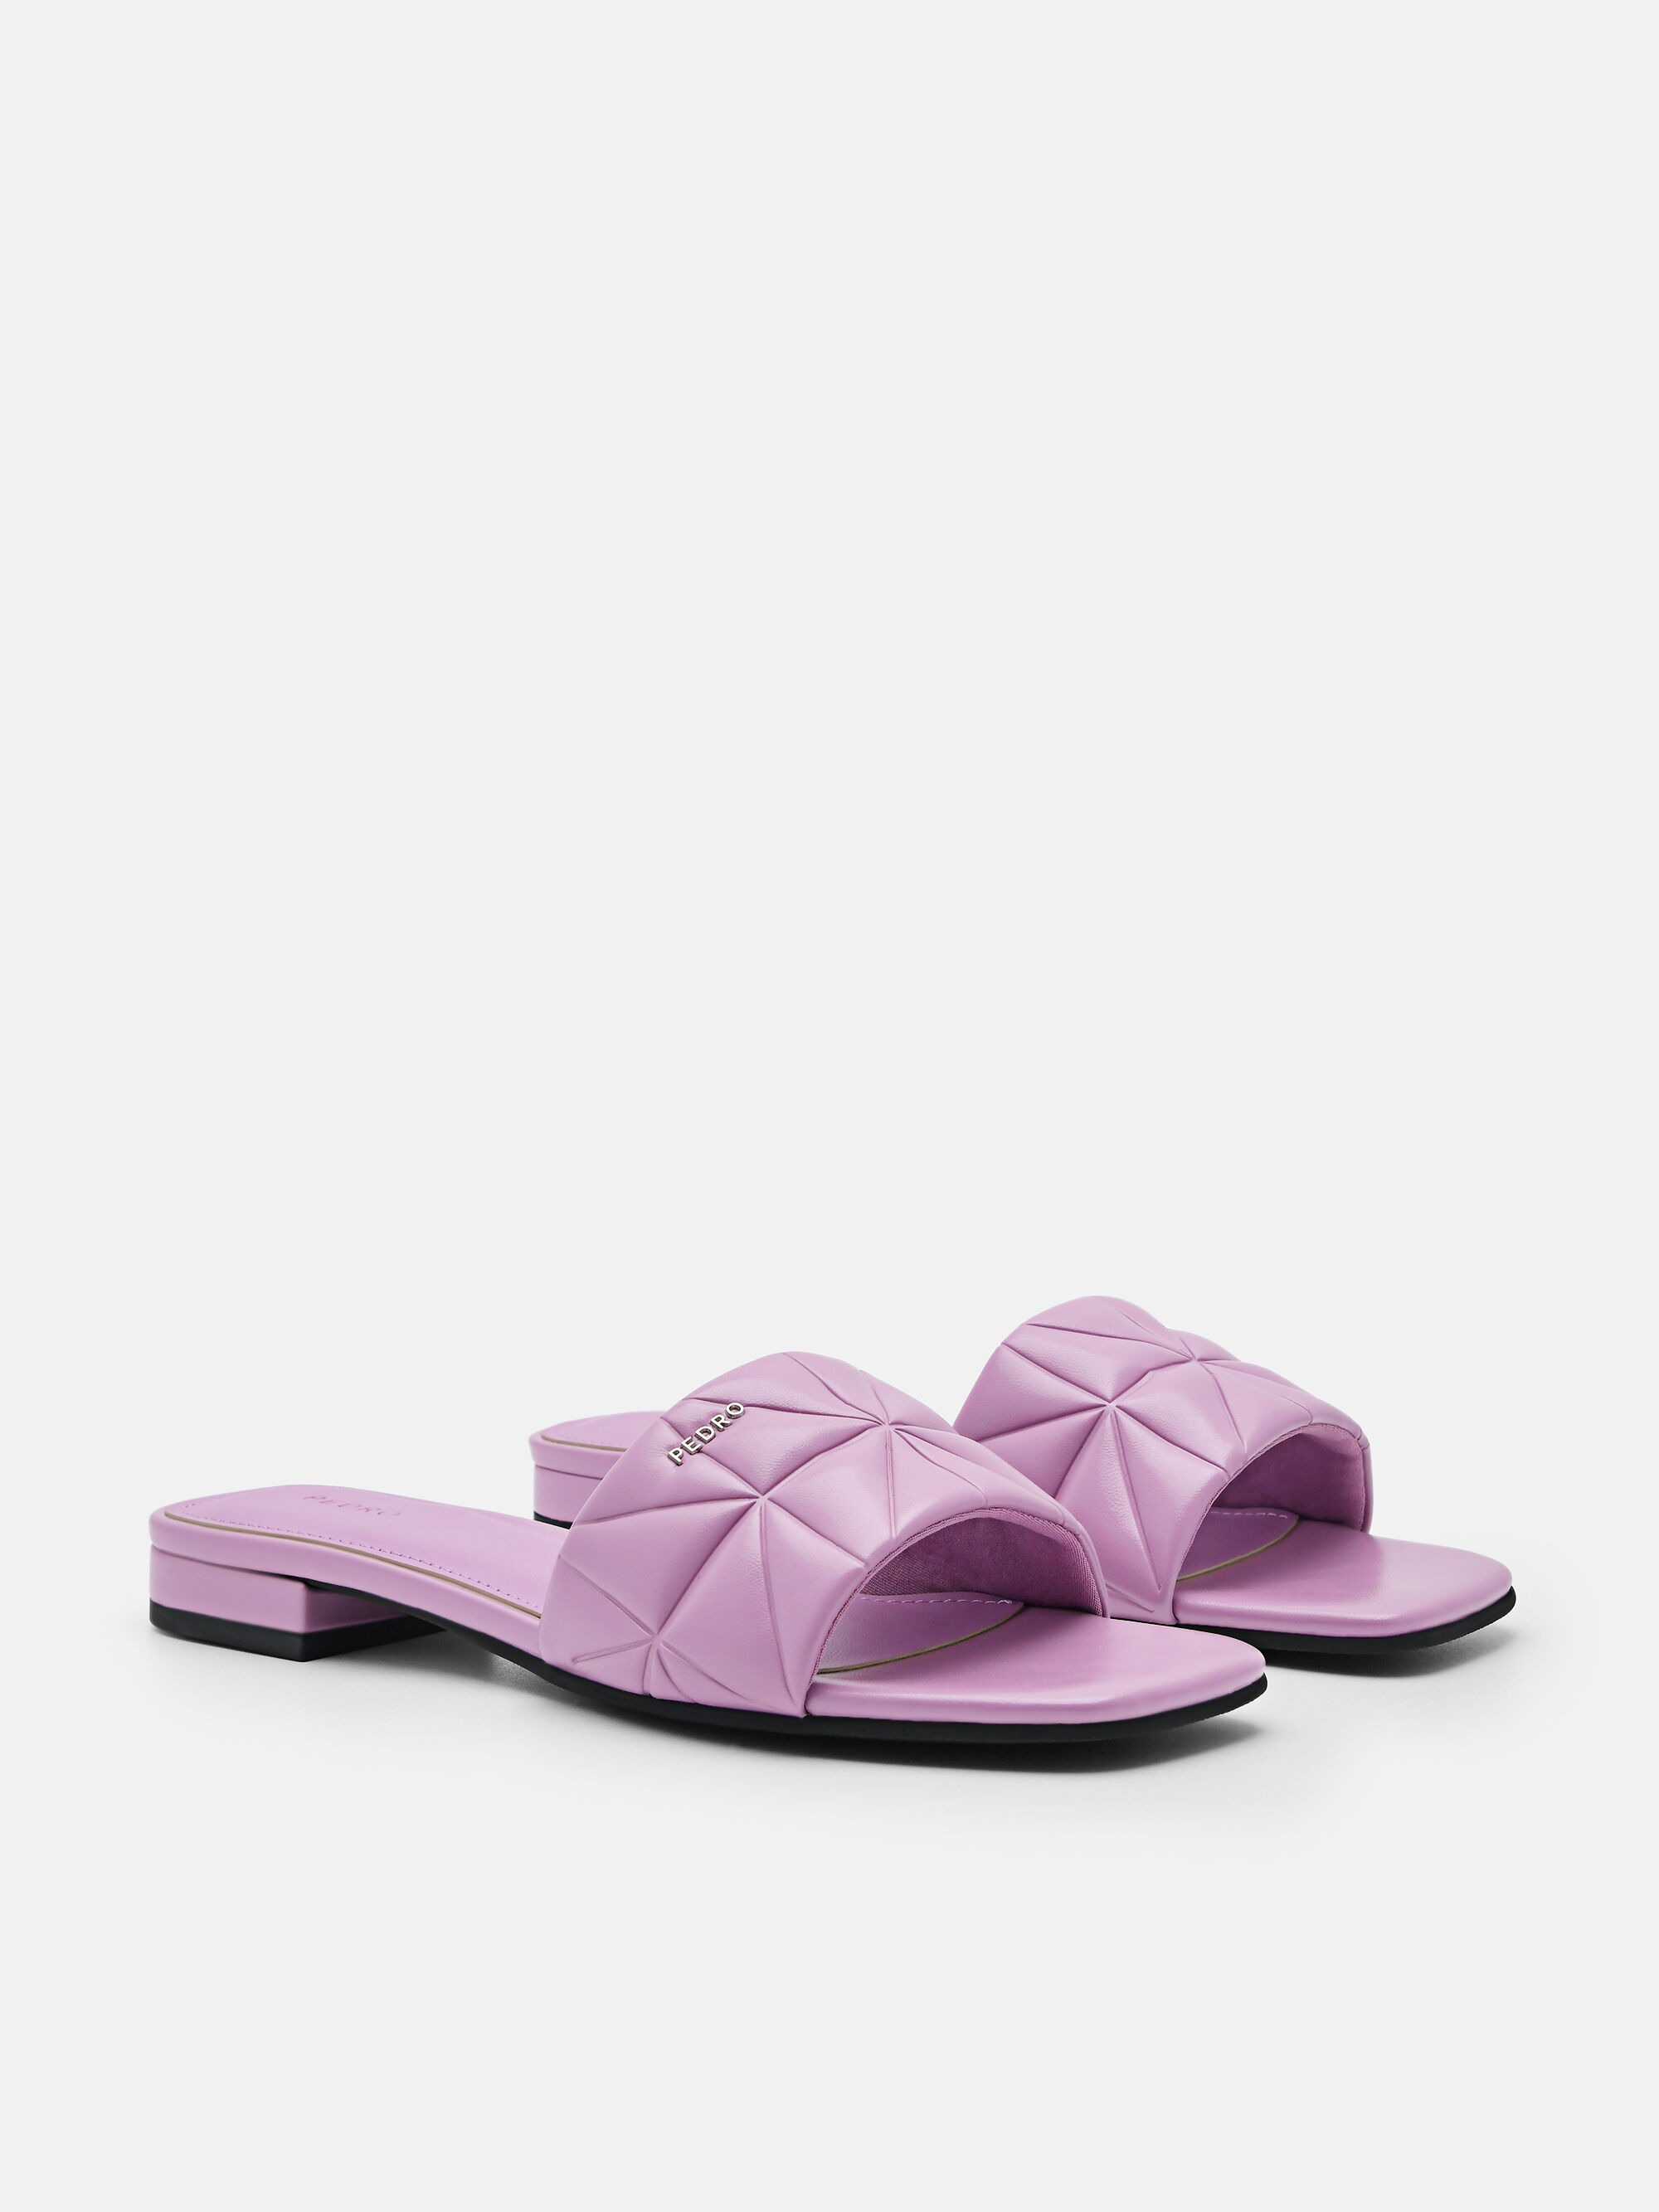 Bianca Sandals in Pixel, Purple